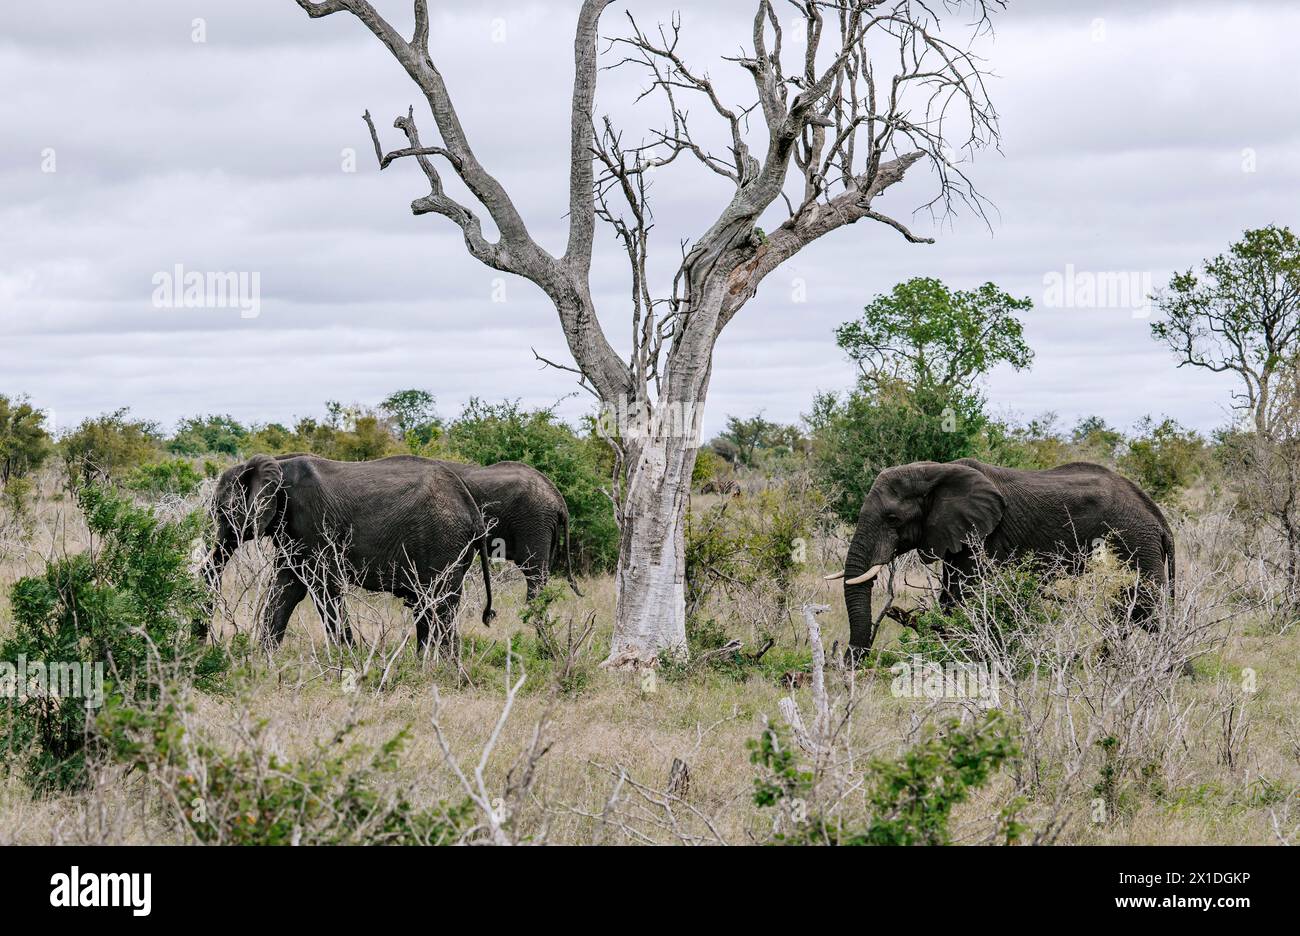 Trois éléphants d'Afrique marchent sur la savane, près de l'arbre séché. Safari dans le parc national Kruger, Afrique du Sud. Animaux de la faune de fond, nature sauvage Banque D'Images